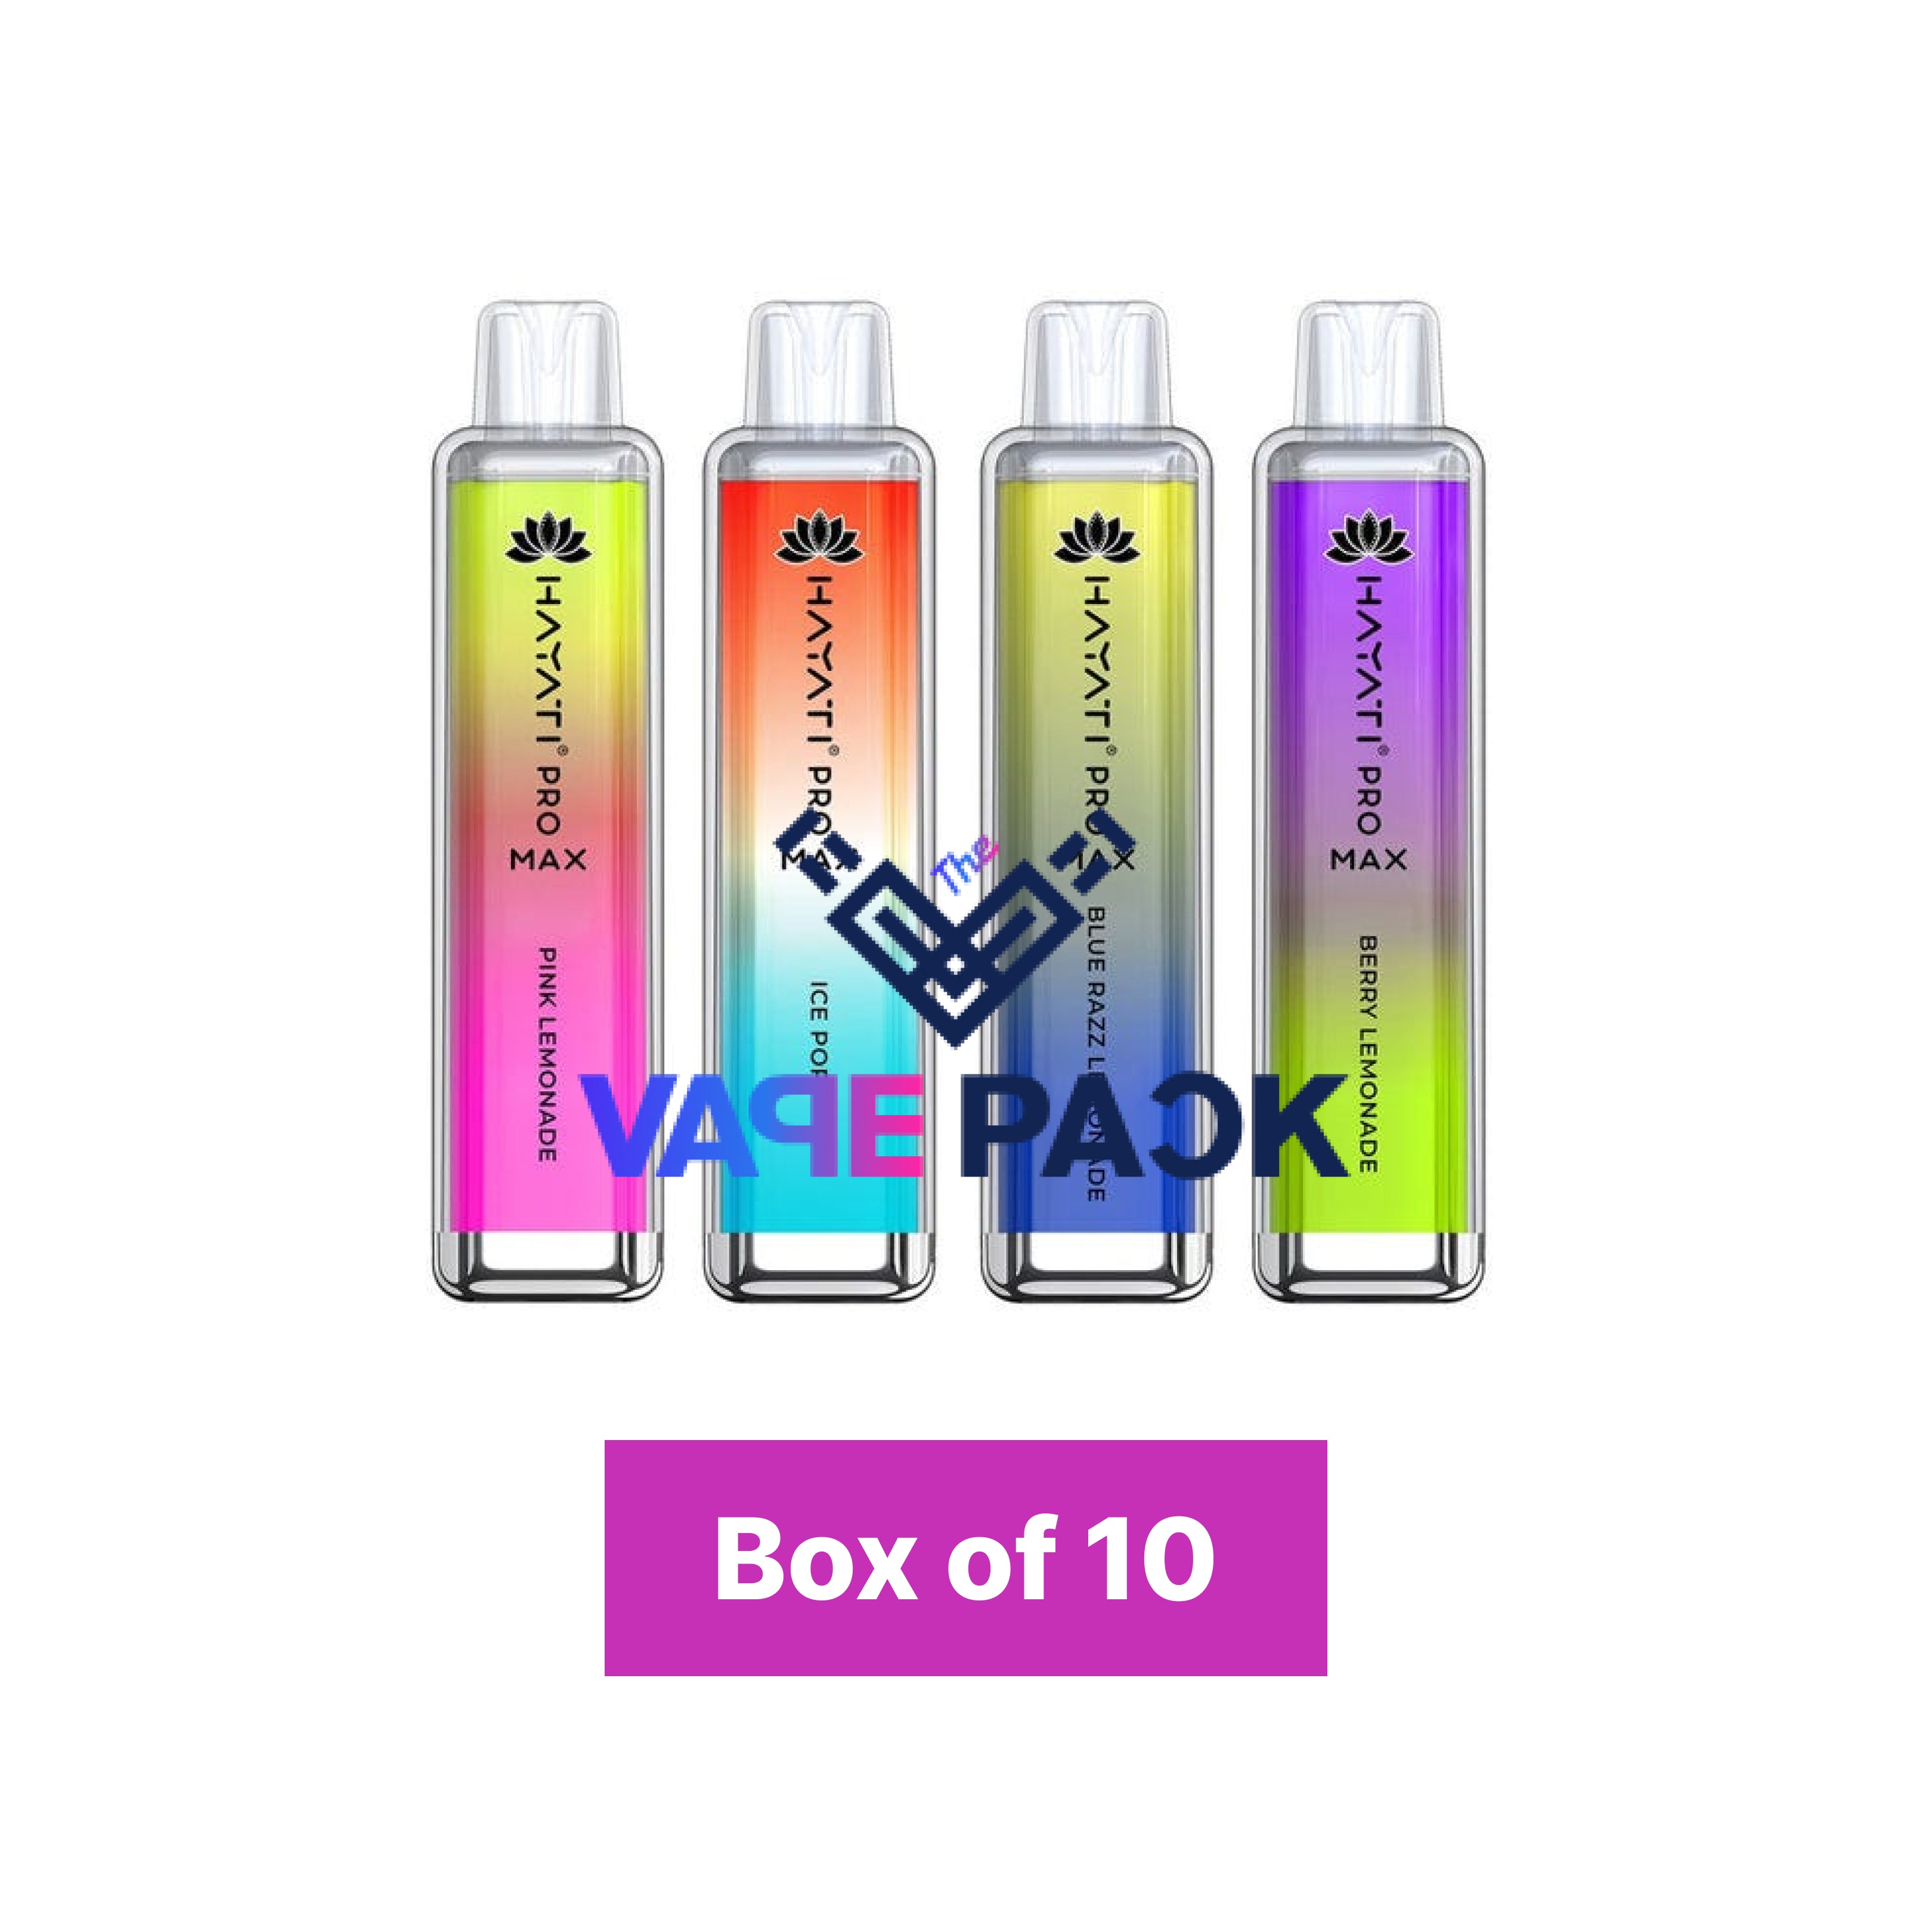 Hayati Pro Max 4000 Puffs Vape Box of 10!